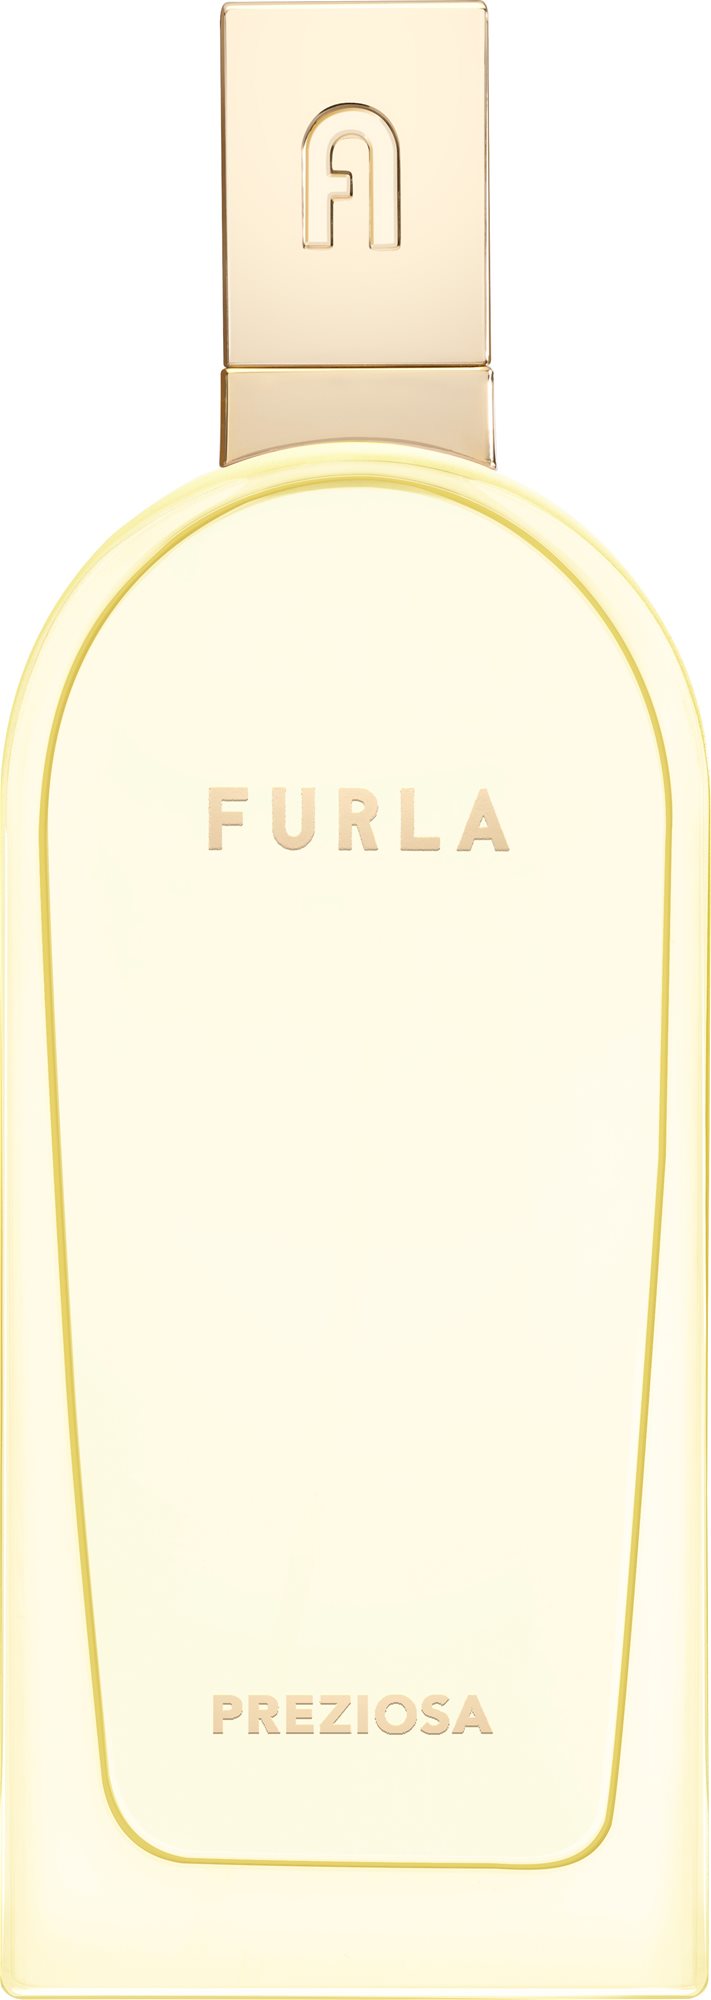 Parfüm FURLA Preziosa EdP 100 ml